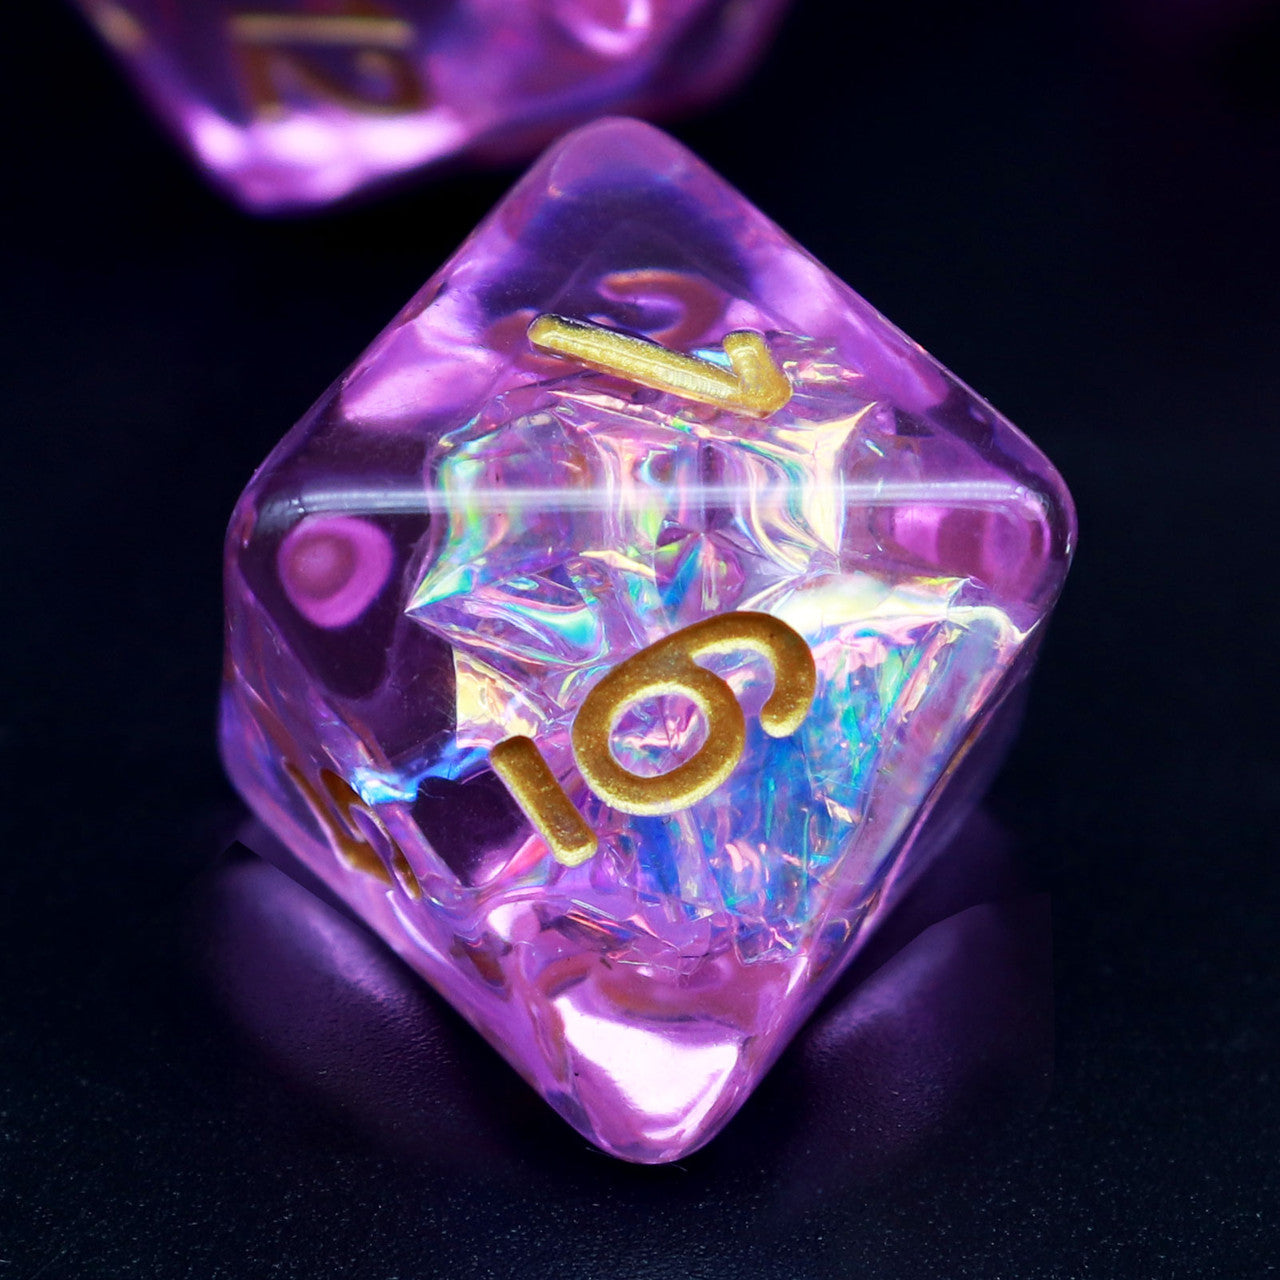 Iridescent dice, resin dice,purple dice